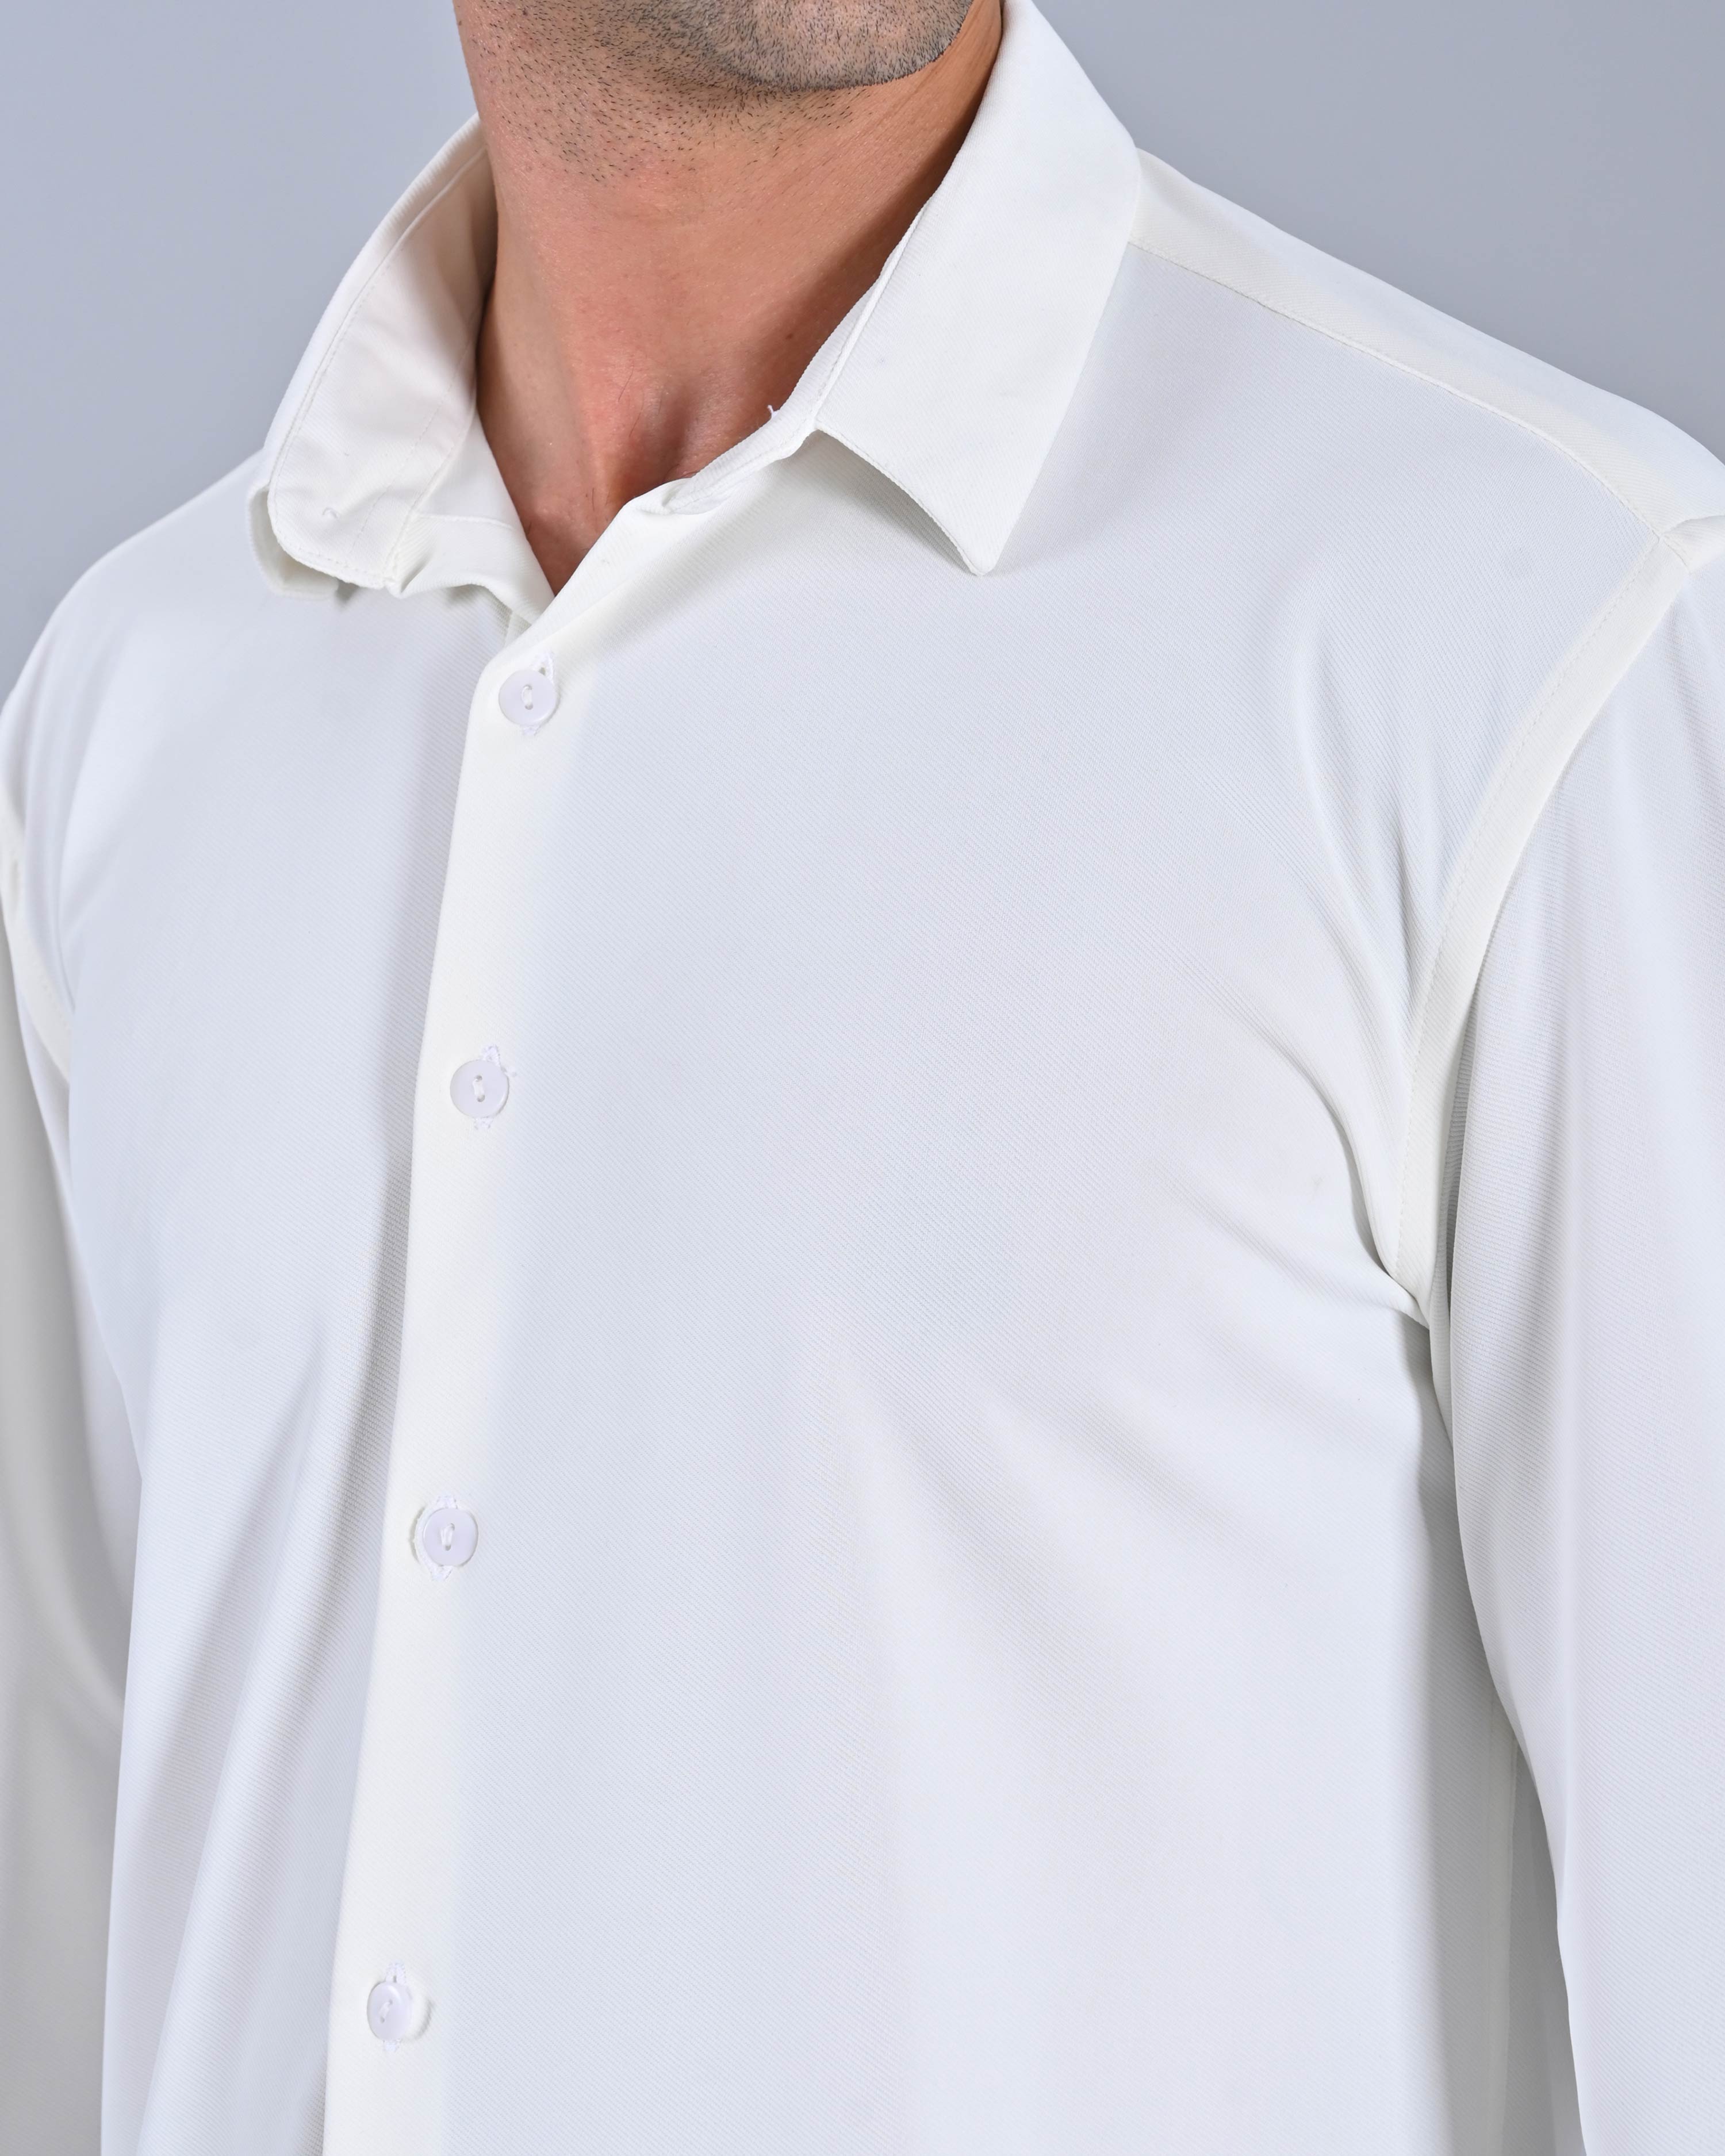 Buy Men's Solid White Cross Knit Shirt Online